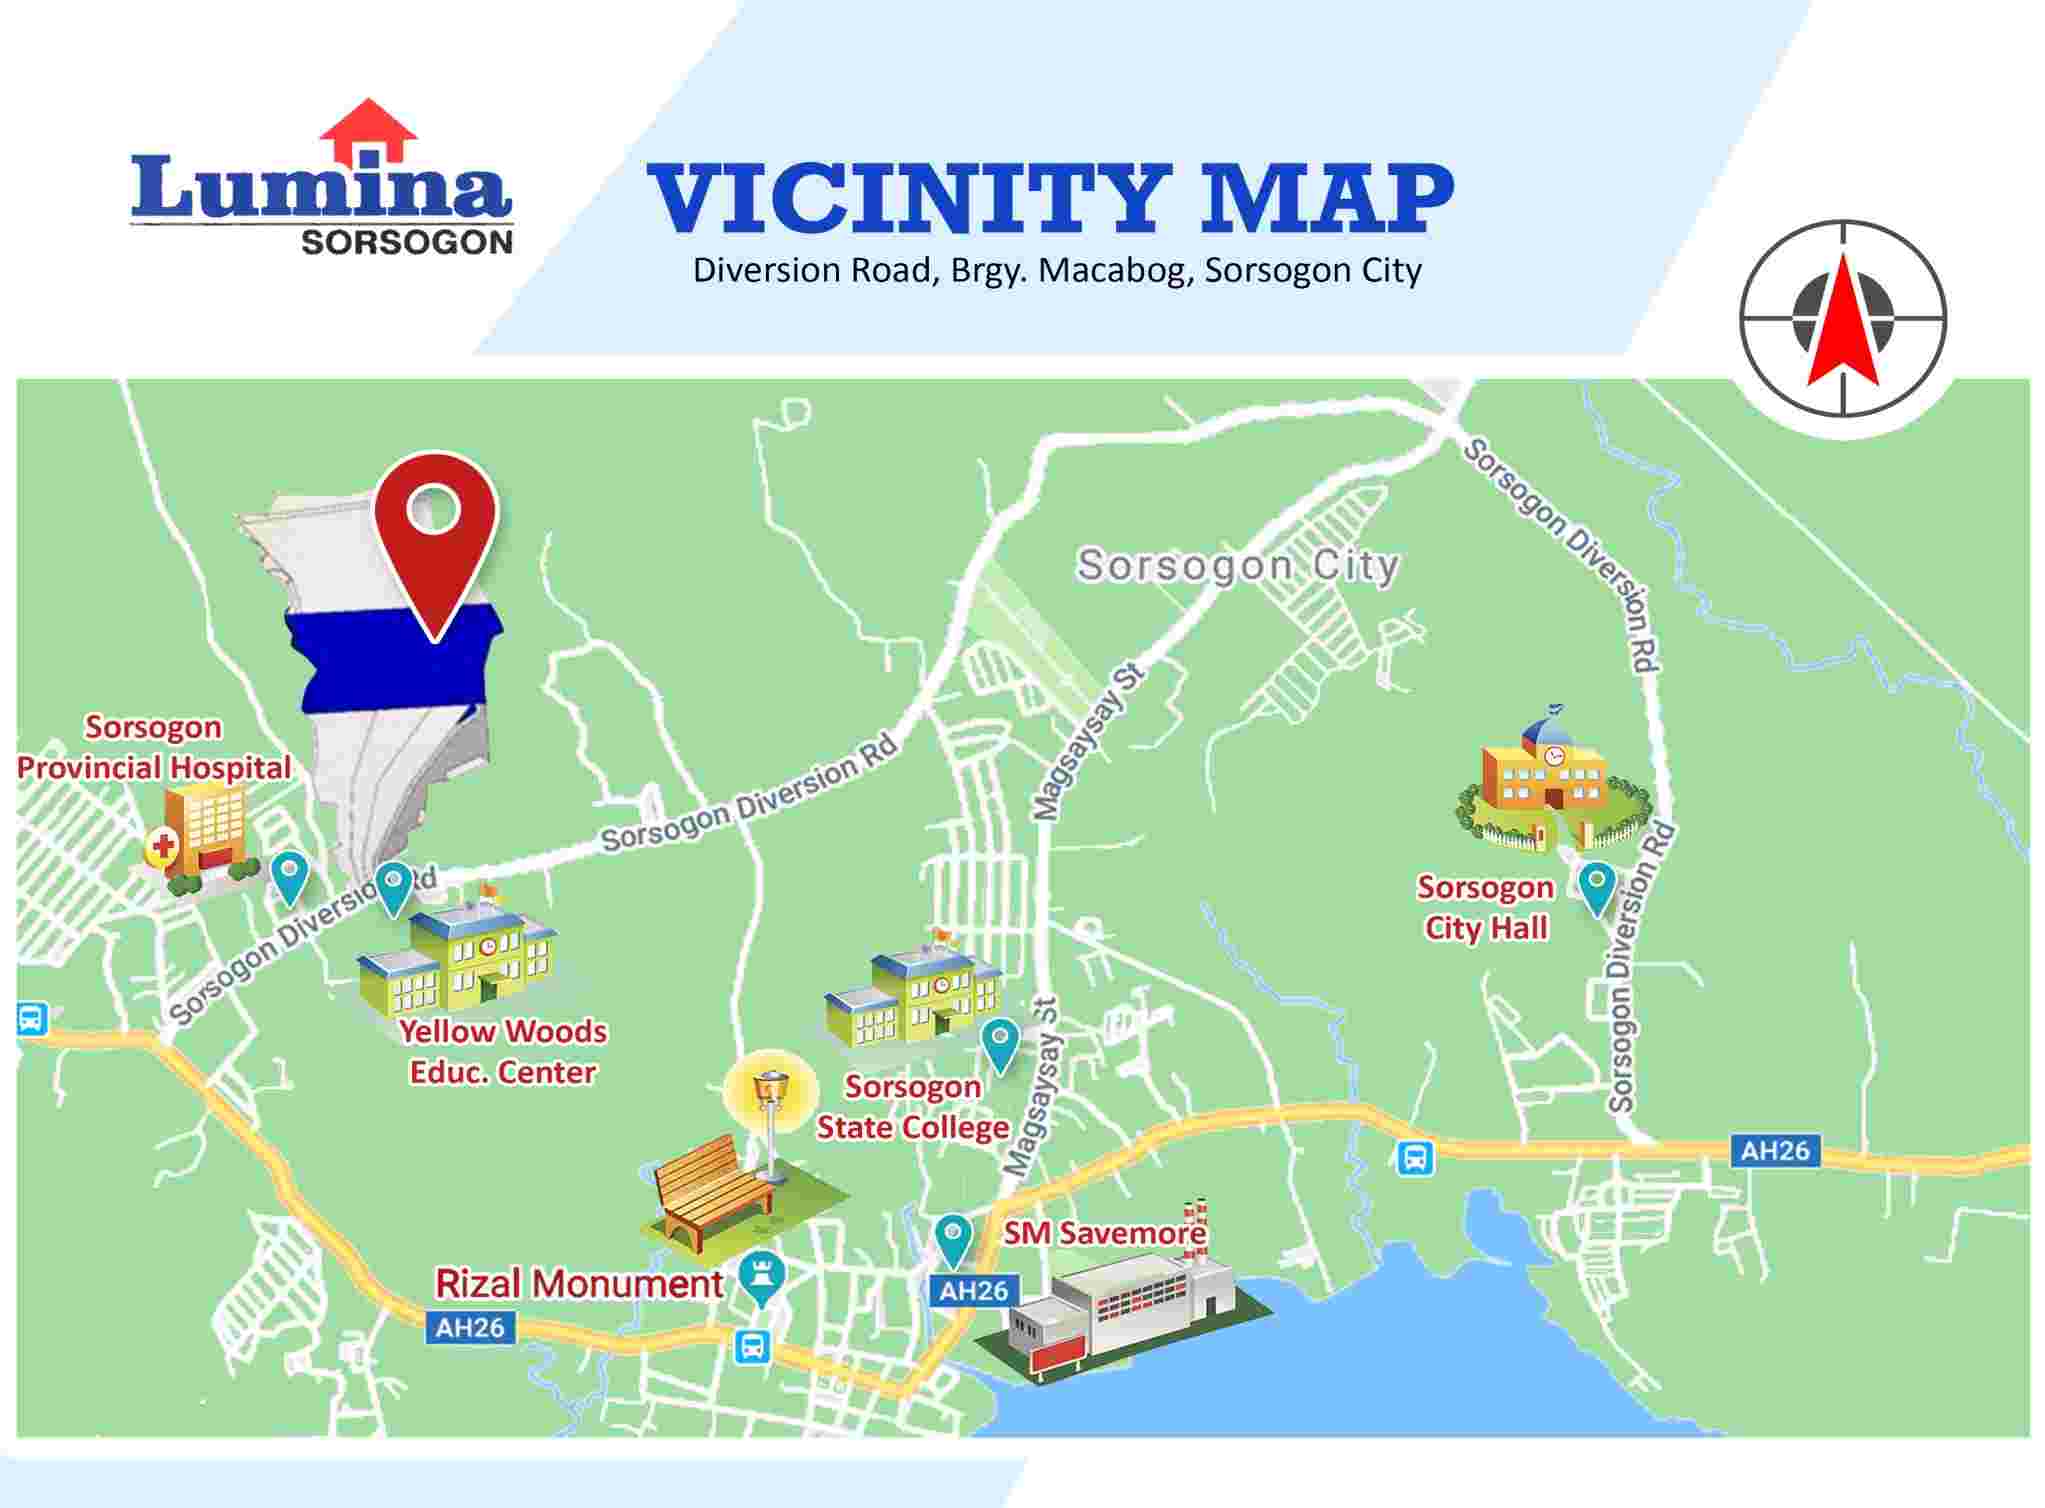 Vicinity-Map-1652173152.jpeg